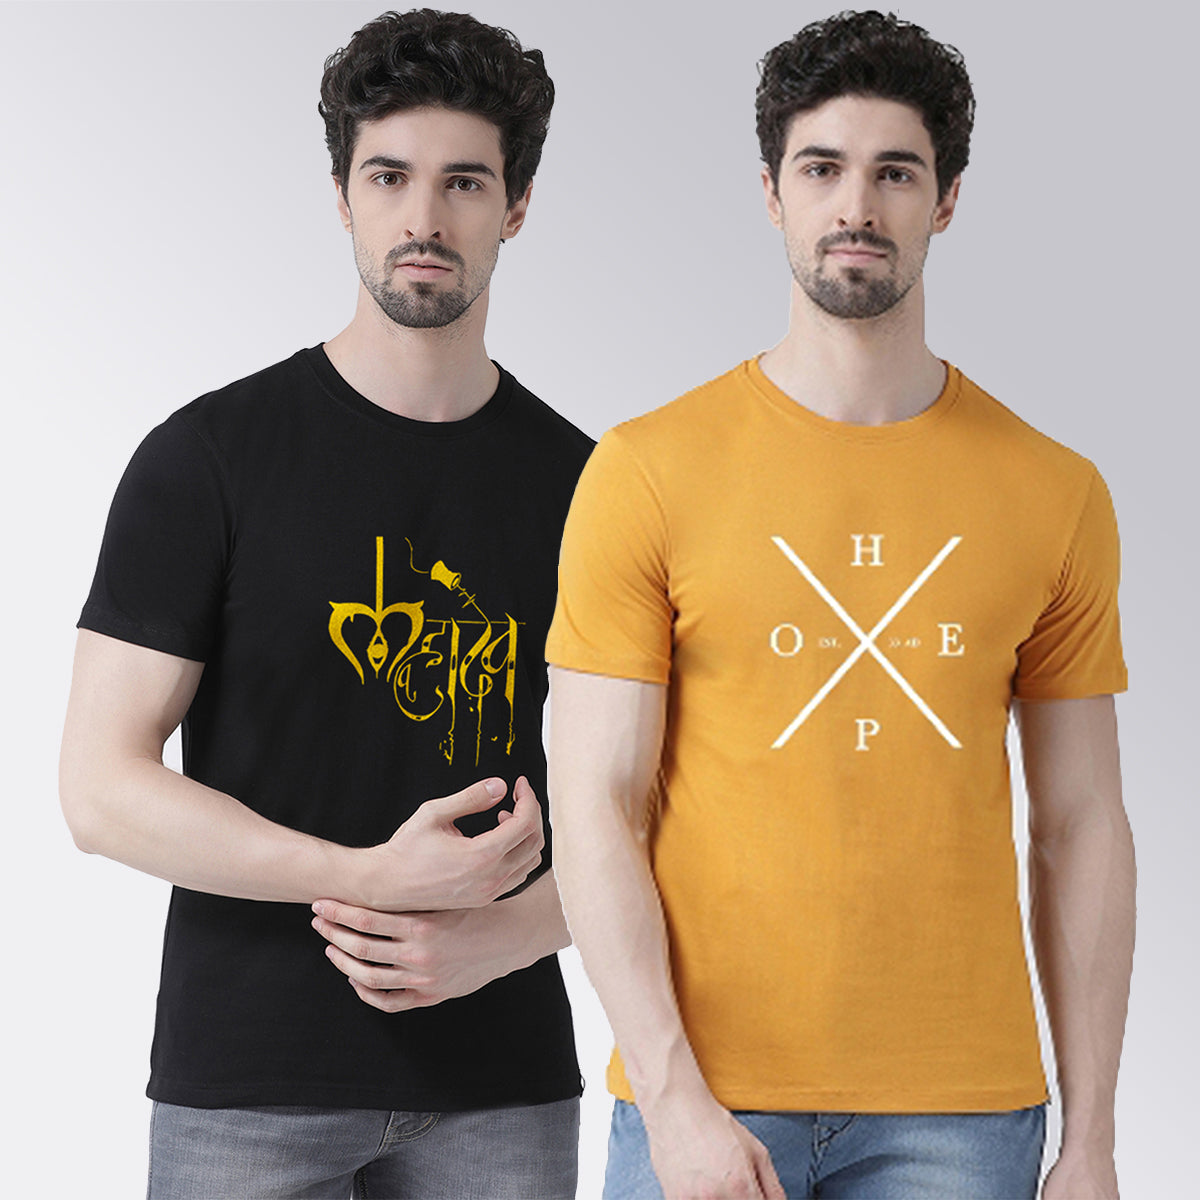 Men's Pack Of 2 Black & Mustard Printed Half Sleeves T-Shirt - Friskers